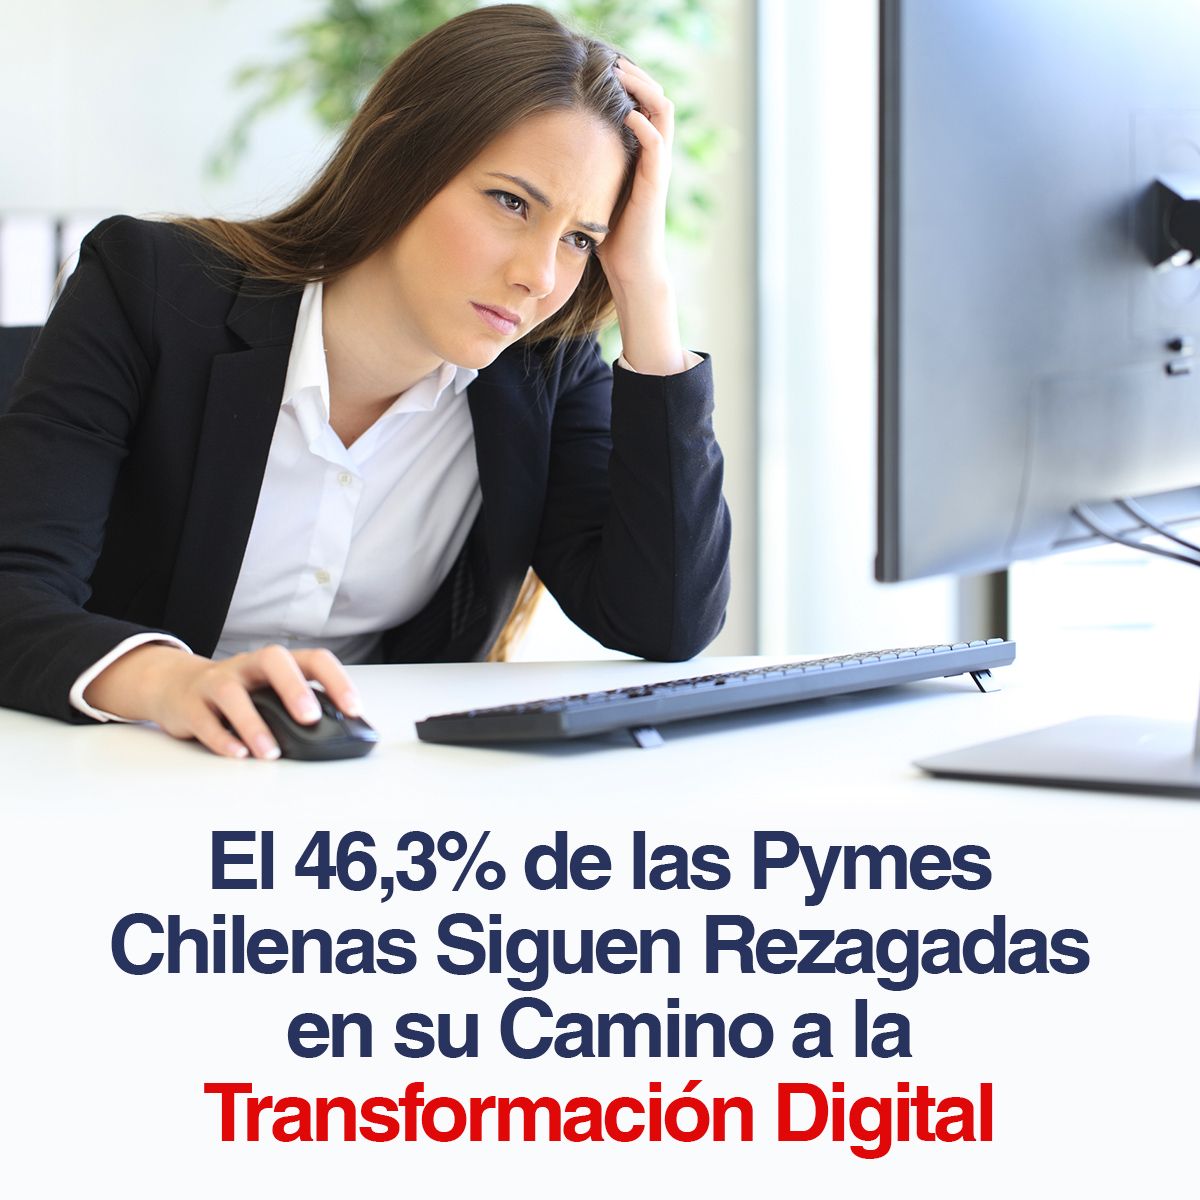 El 46,3% de las Pymes Chilenas Siguen Rezagadas en su Camino a la Transformación Digital